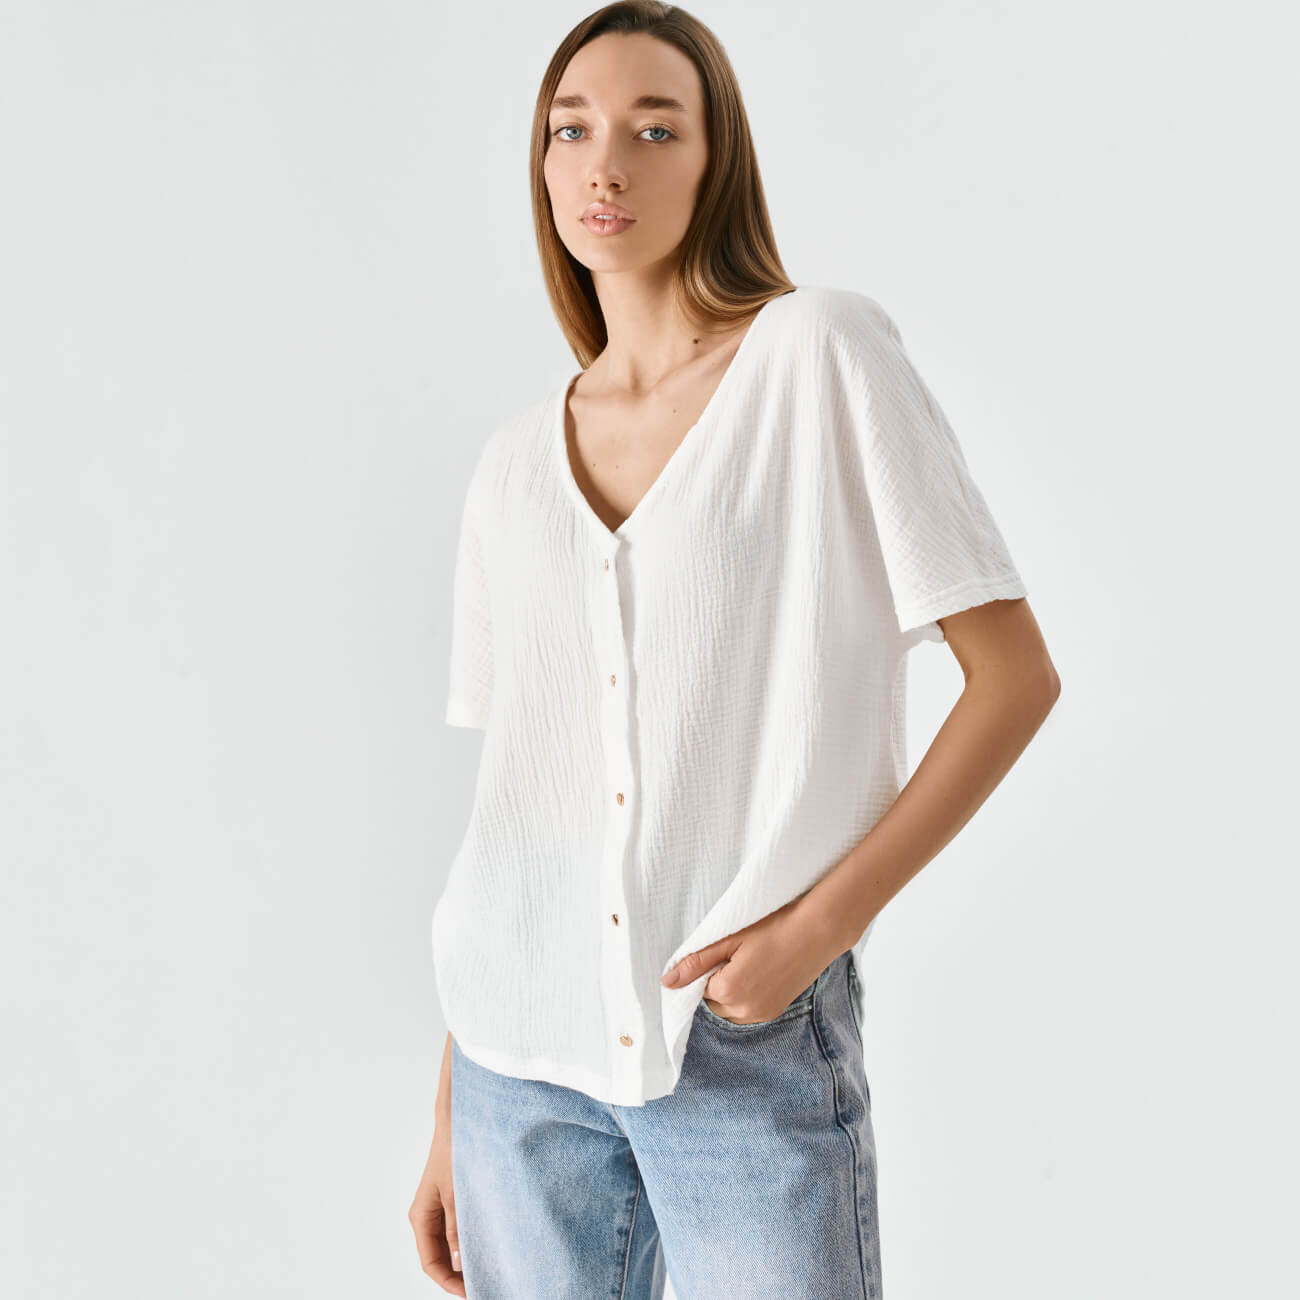 Рубашка женская, р. XL, с коротким рукавом, муслин, белая, Allison блуза свободная с коротким рукавом и рисунком